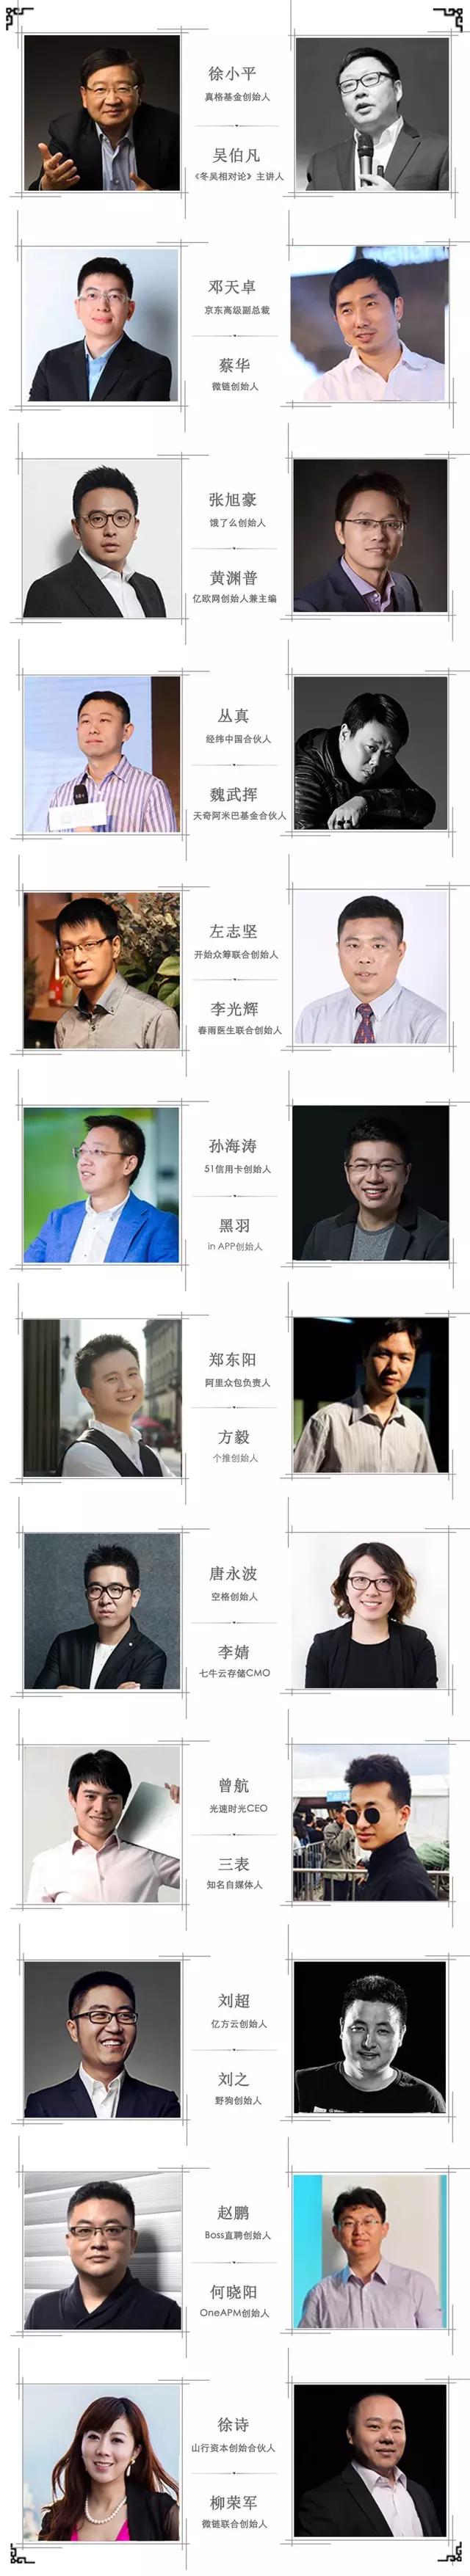 2016北京「链」大会——链接创业，坚固未来